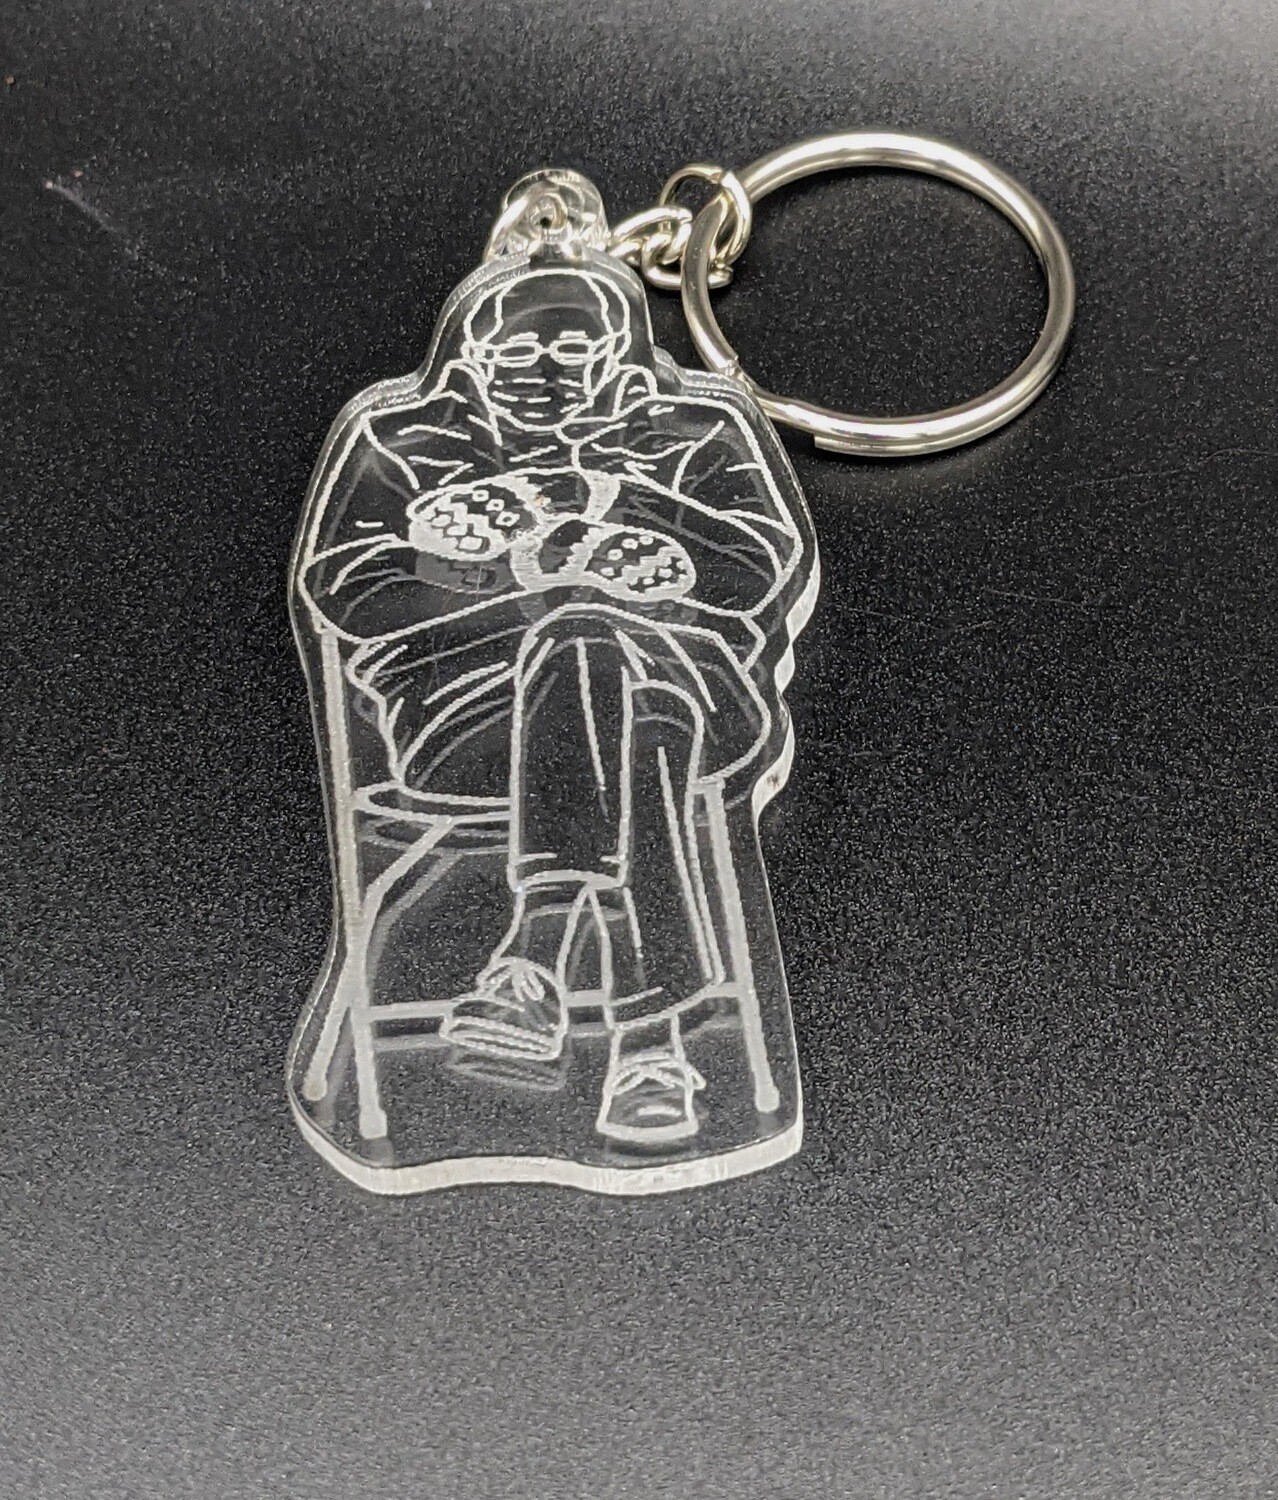 Clear acrylic Bernie keychain